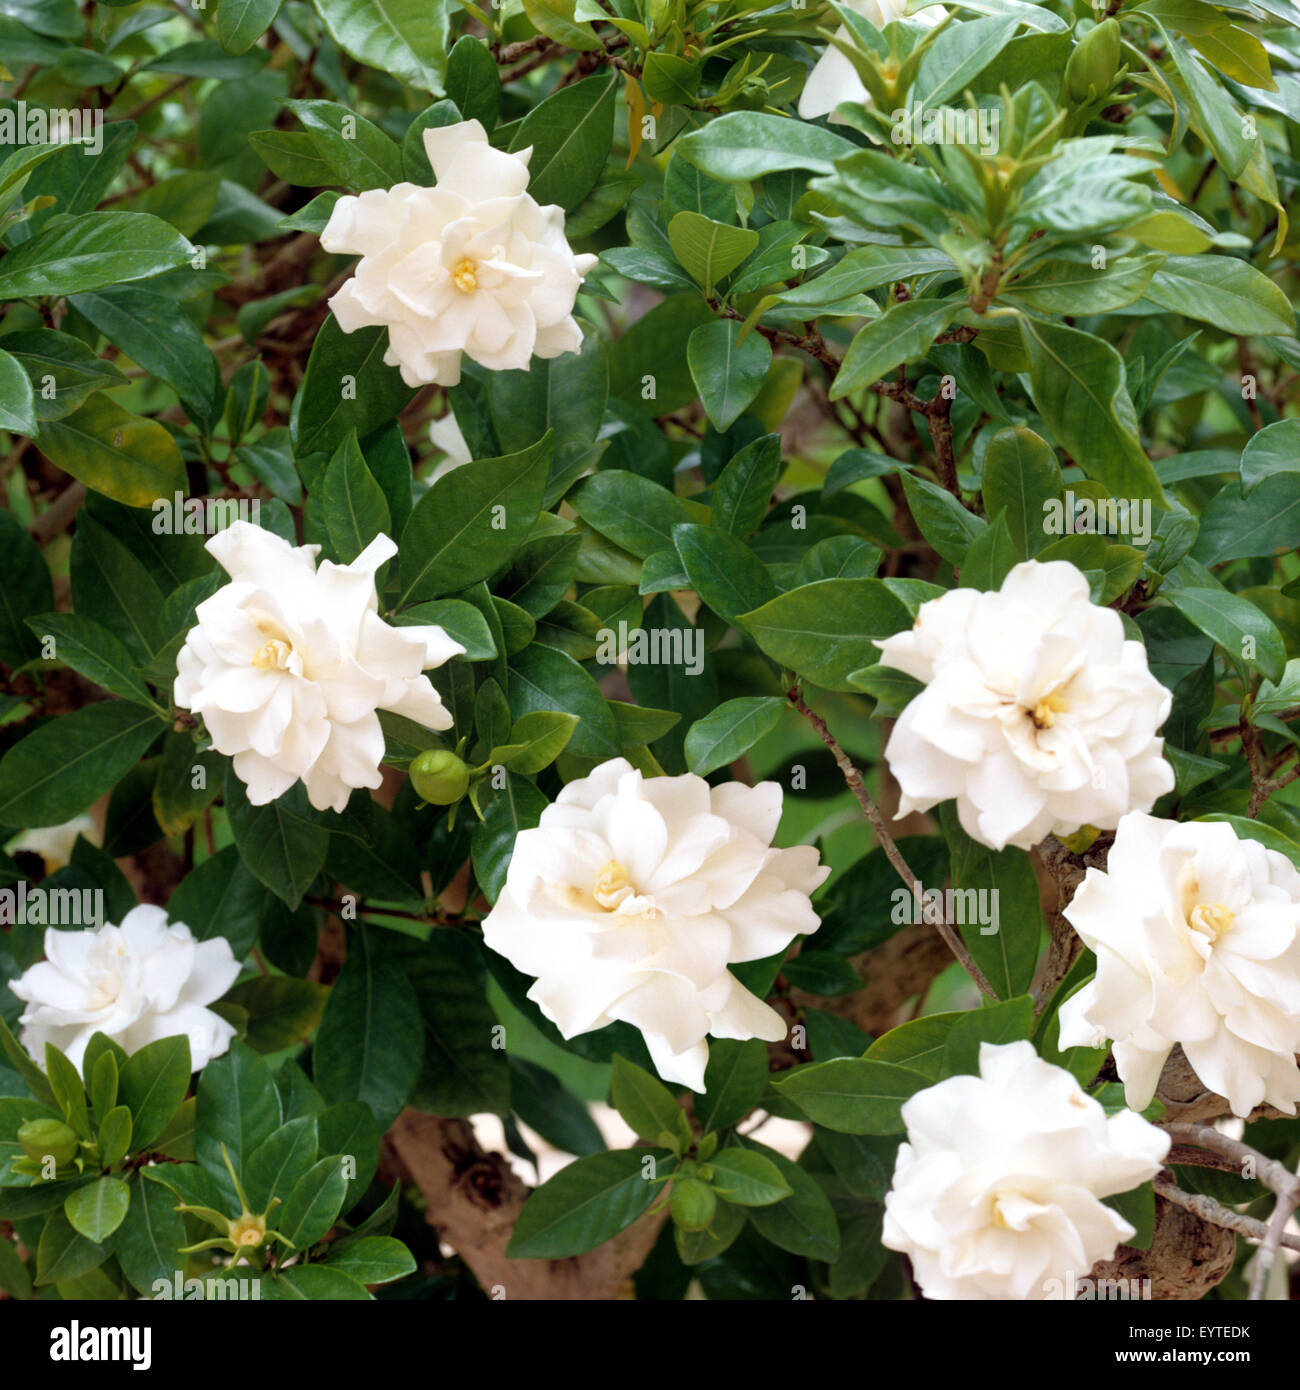 Gardenie; Gardenia jasminoides; Stock Photo